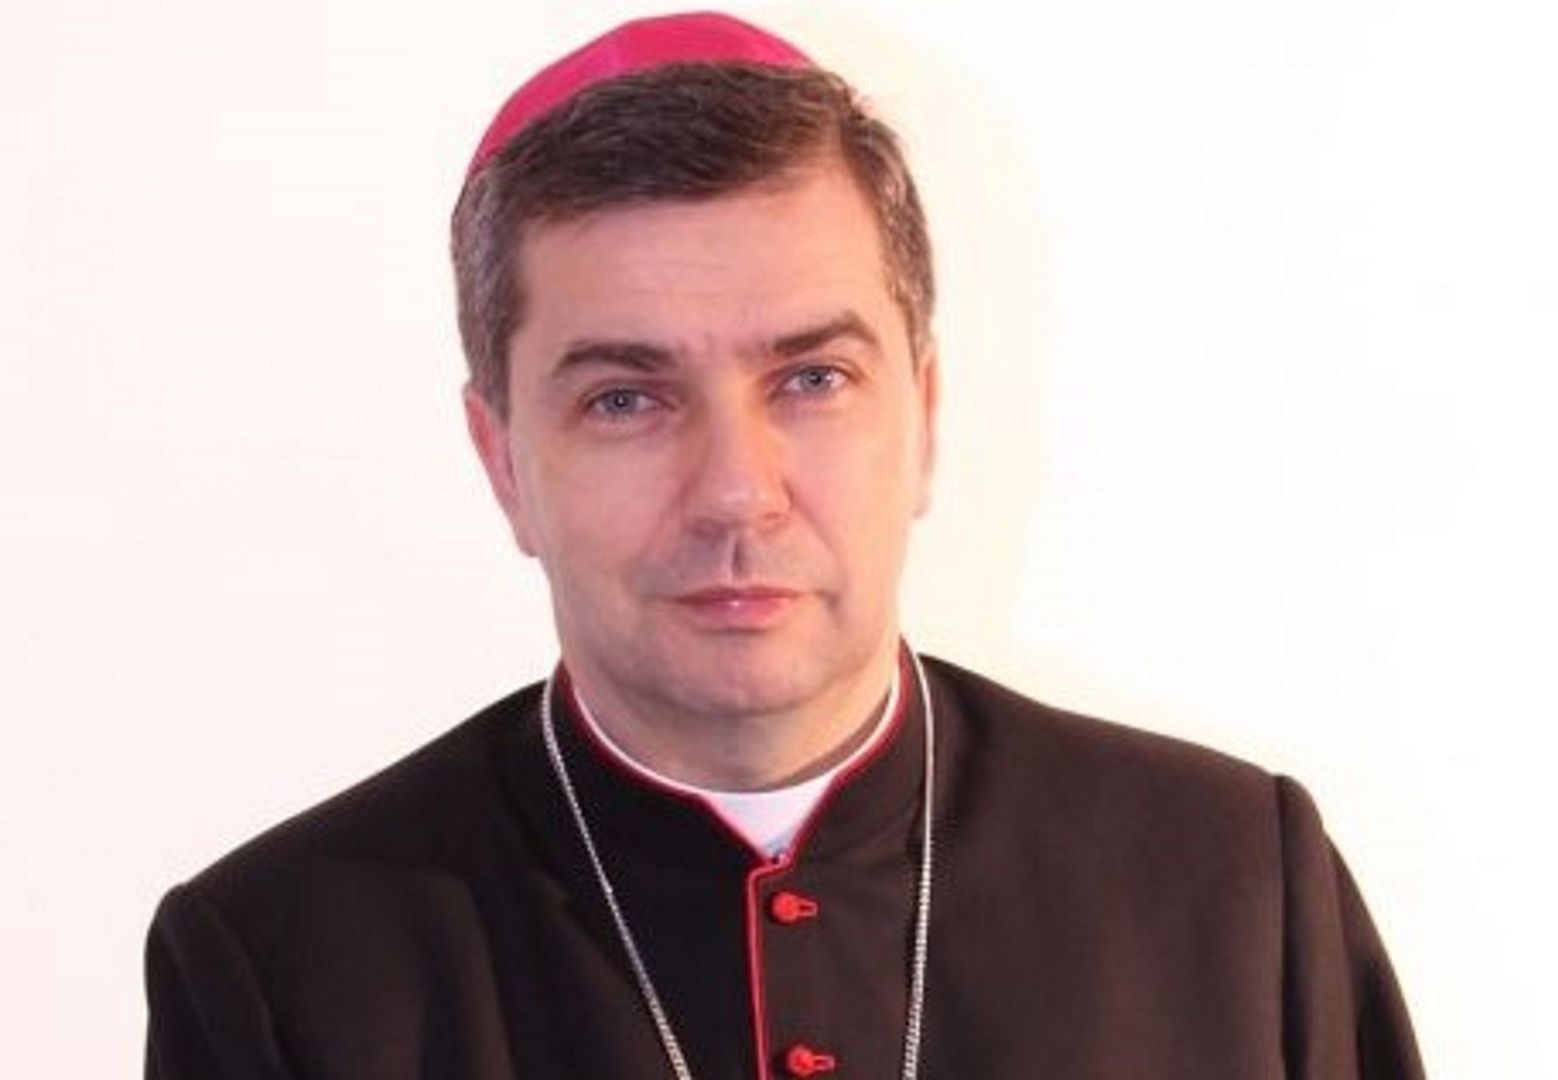 Duchowny w Radiu Maryja: "Mamy kryzys wychowania religijnego w rodzinie".